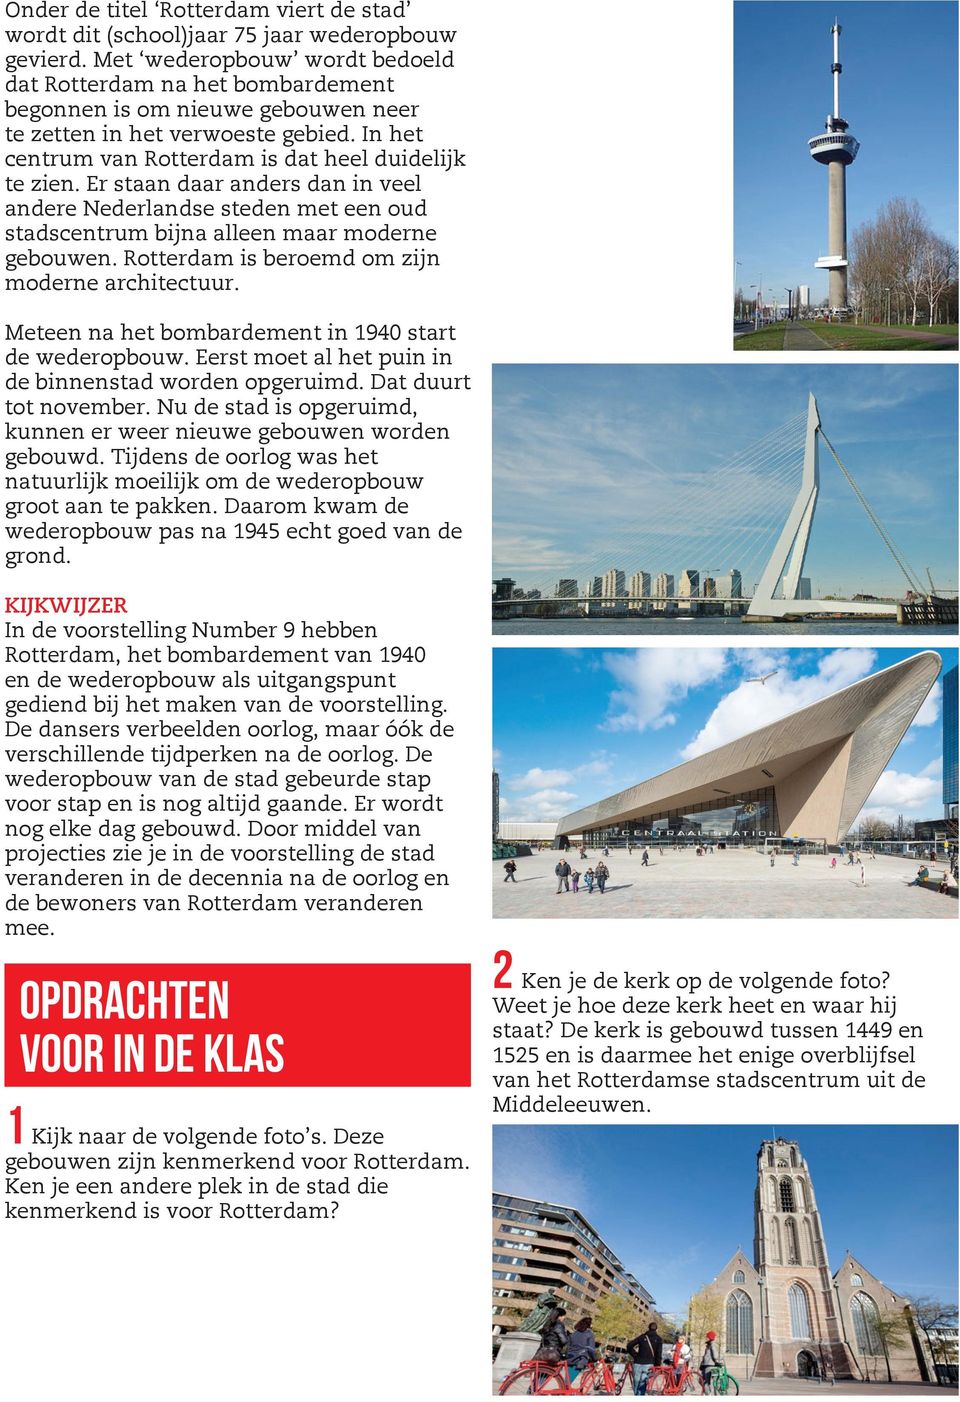 Er staan daar anders dan in veel andere Nederlandse steden met een oud stadscentrum bijna alleen maar moderne gebouwen. Rotterdam is beroemd om zijn moderne architectuur.